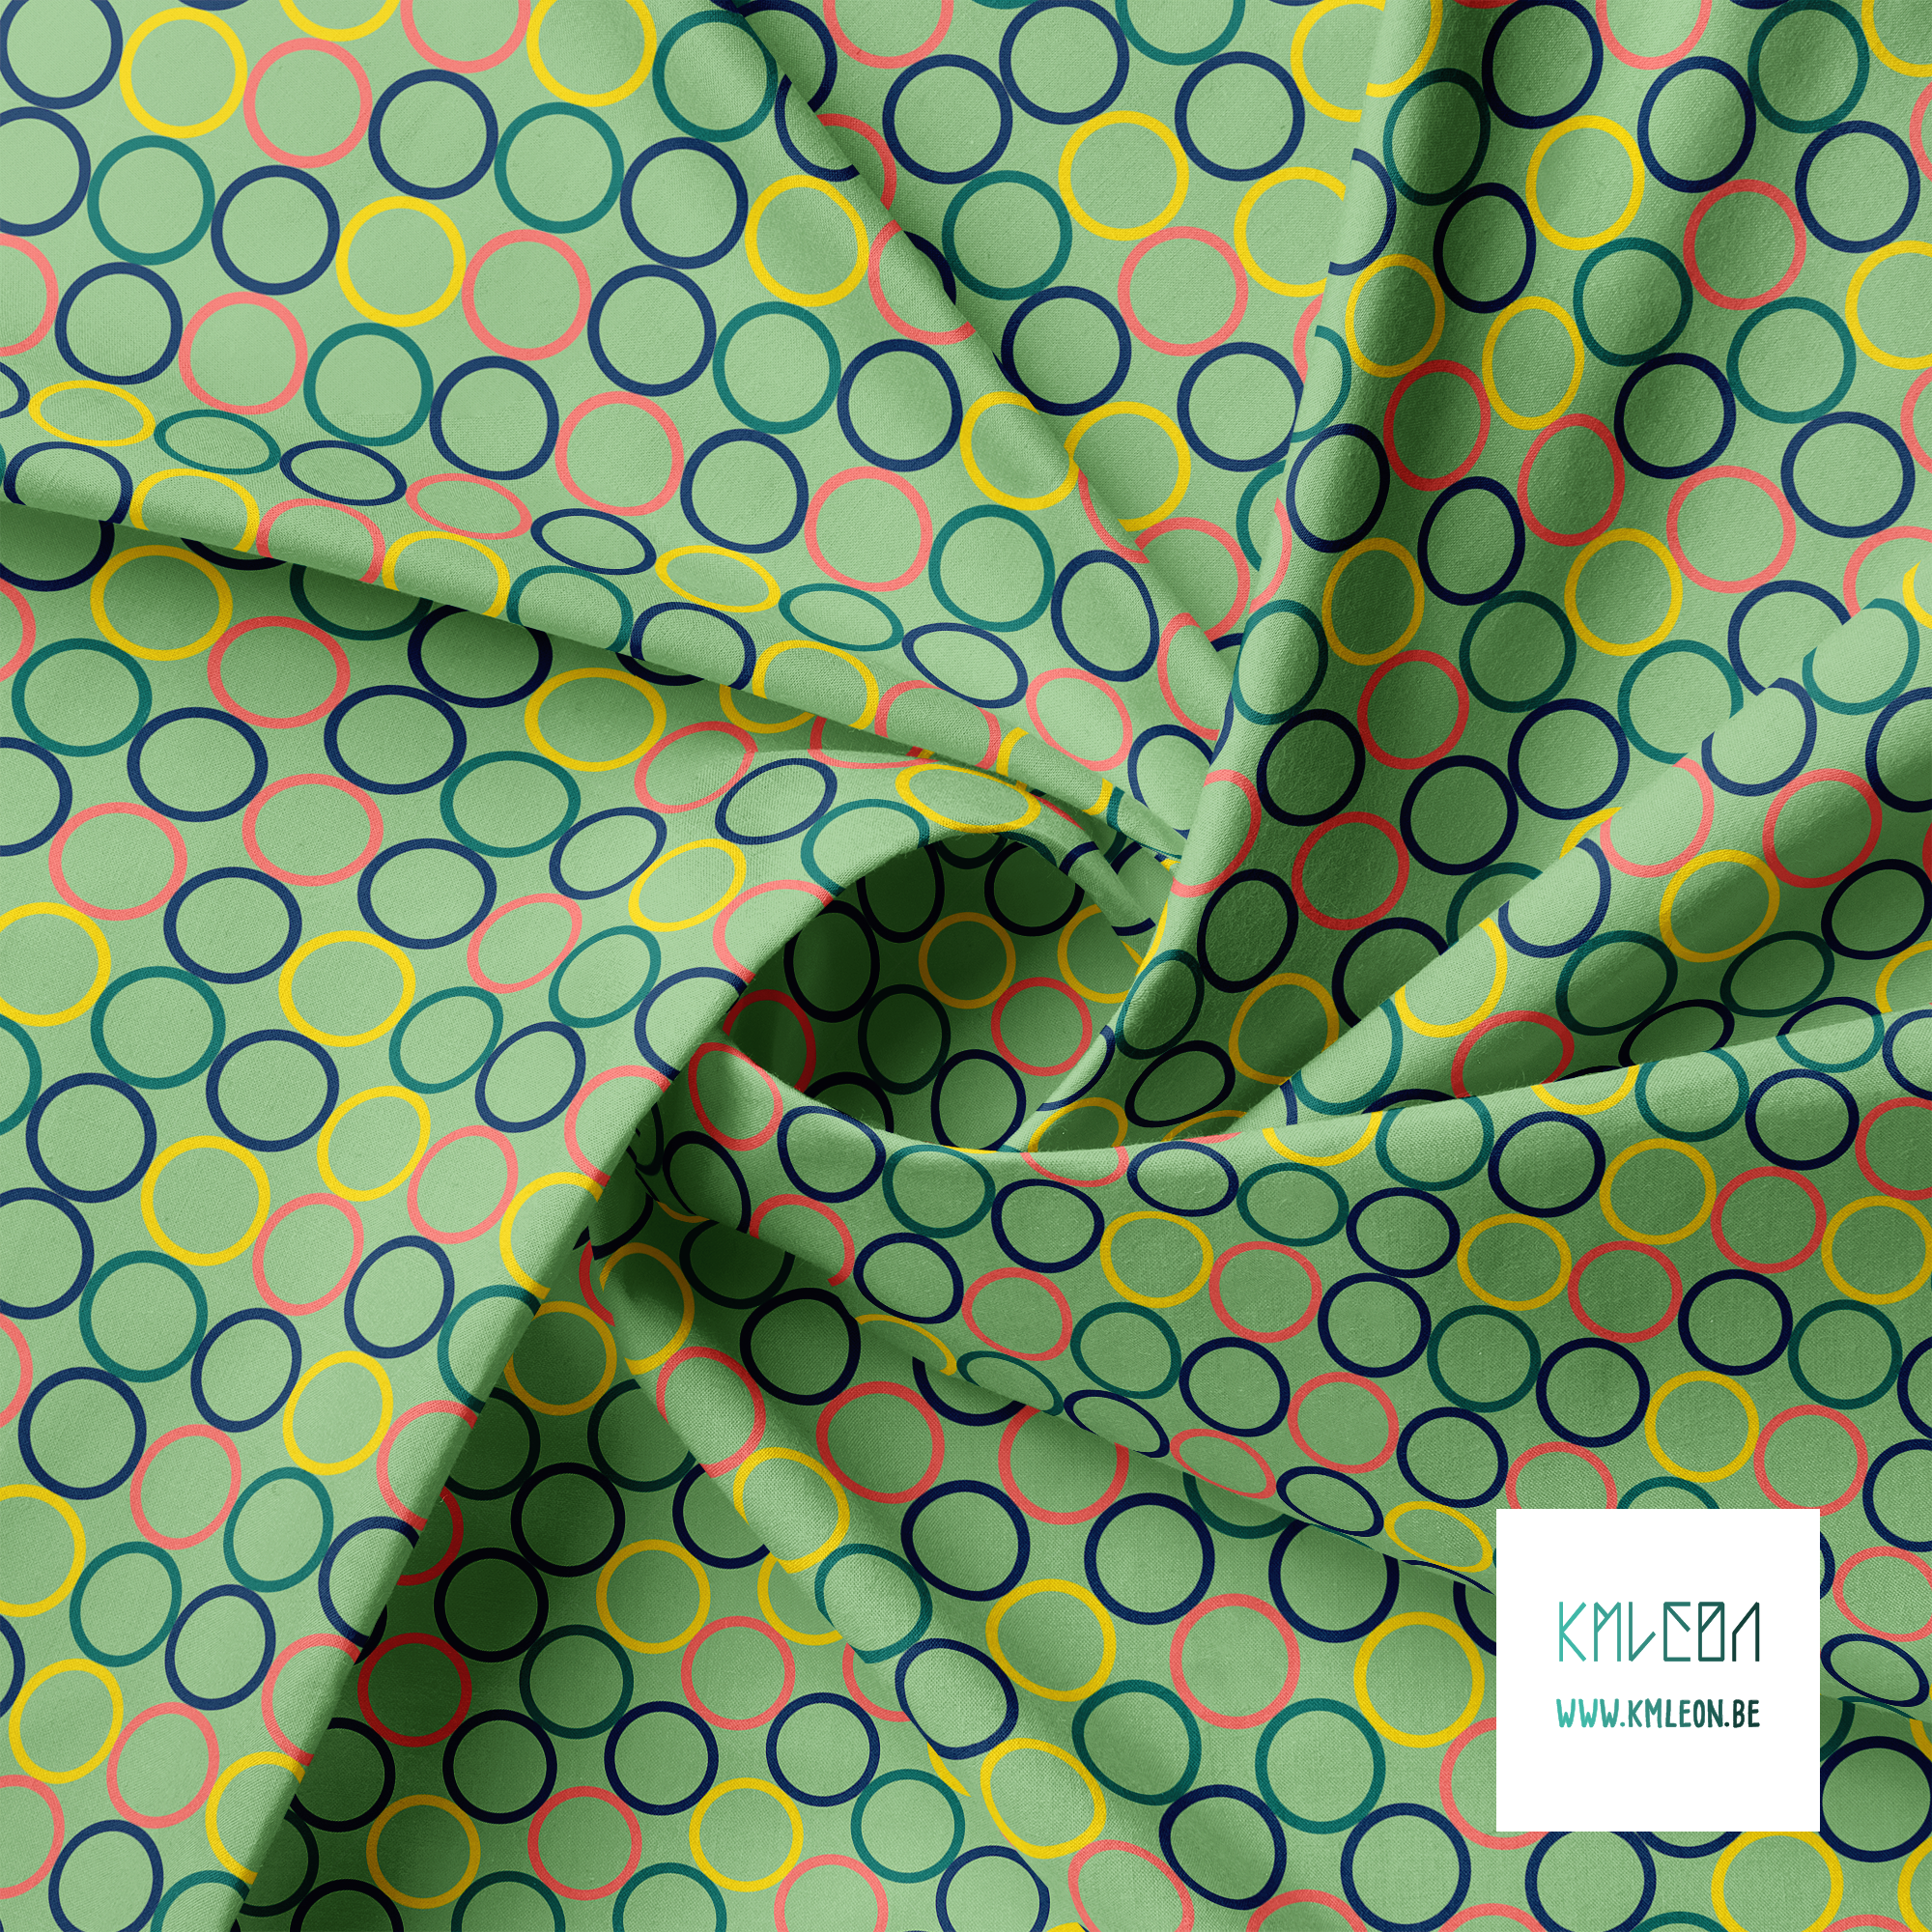 Random coral, green, yellow and navy circles fabric